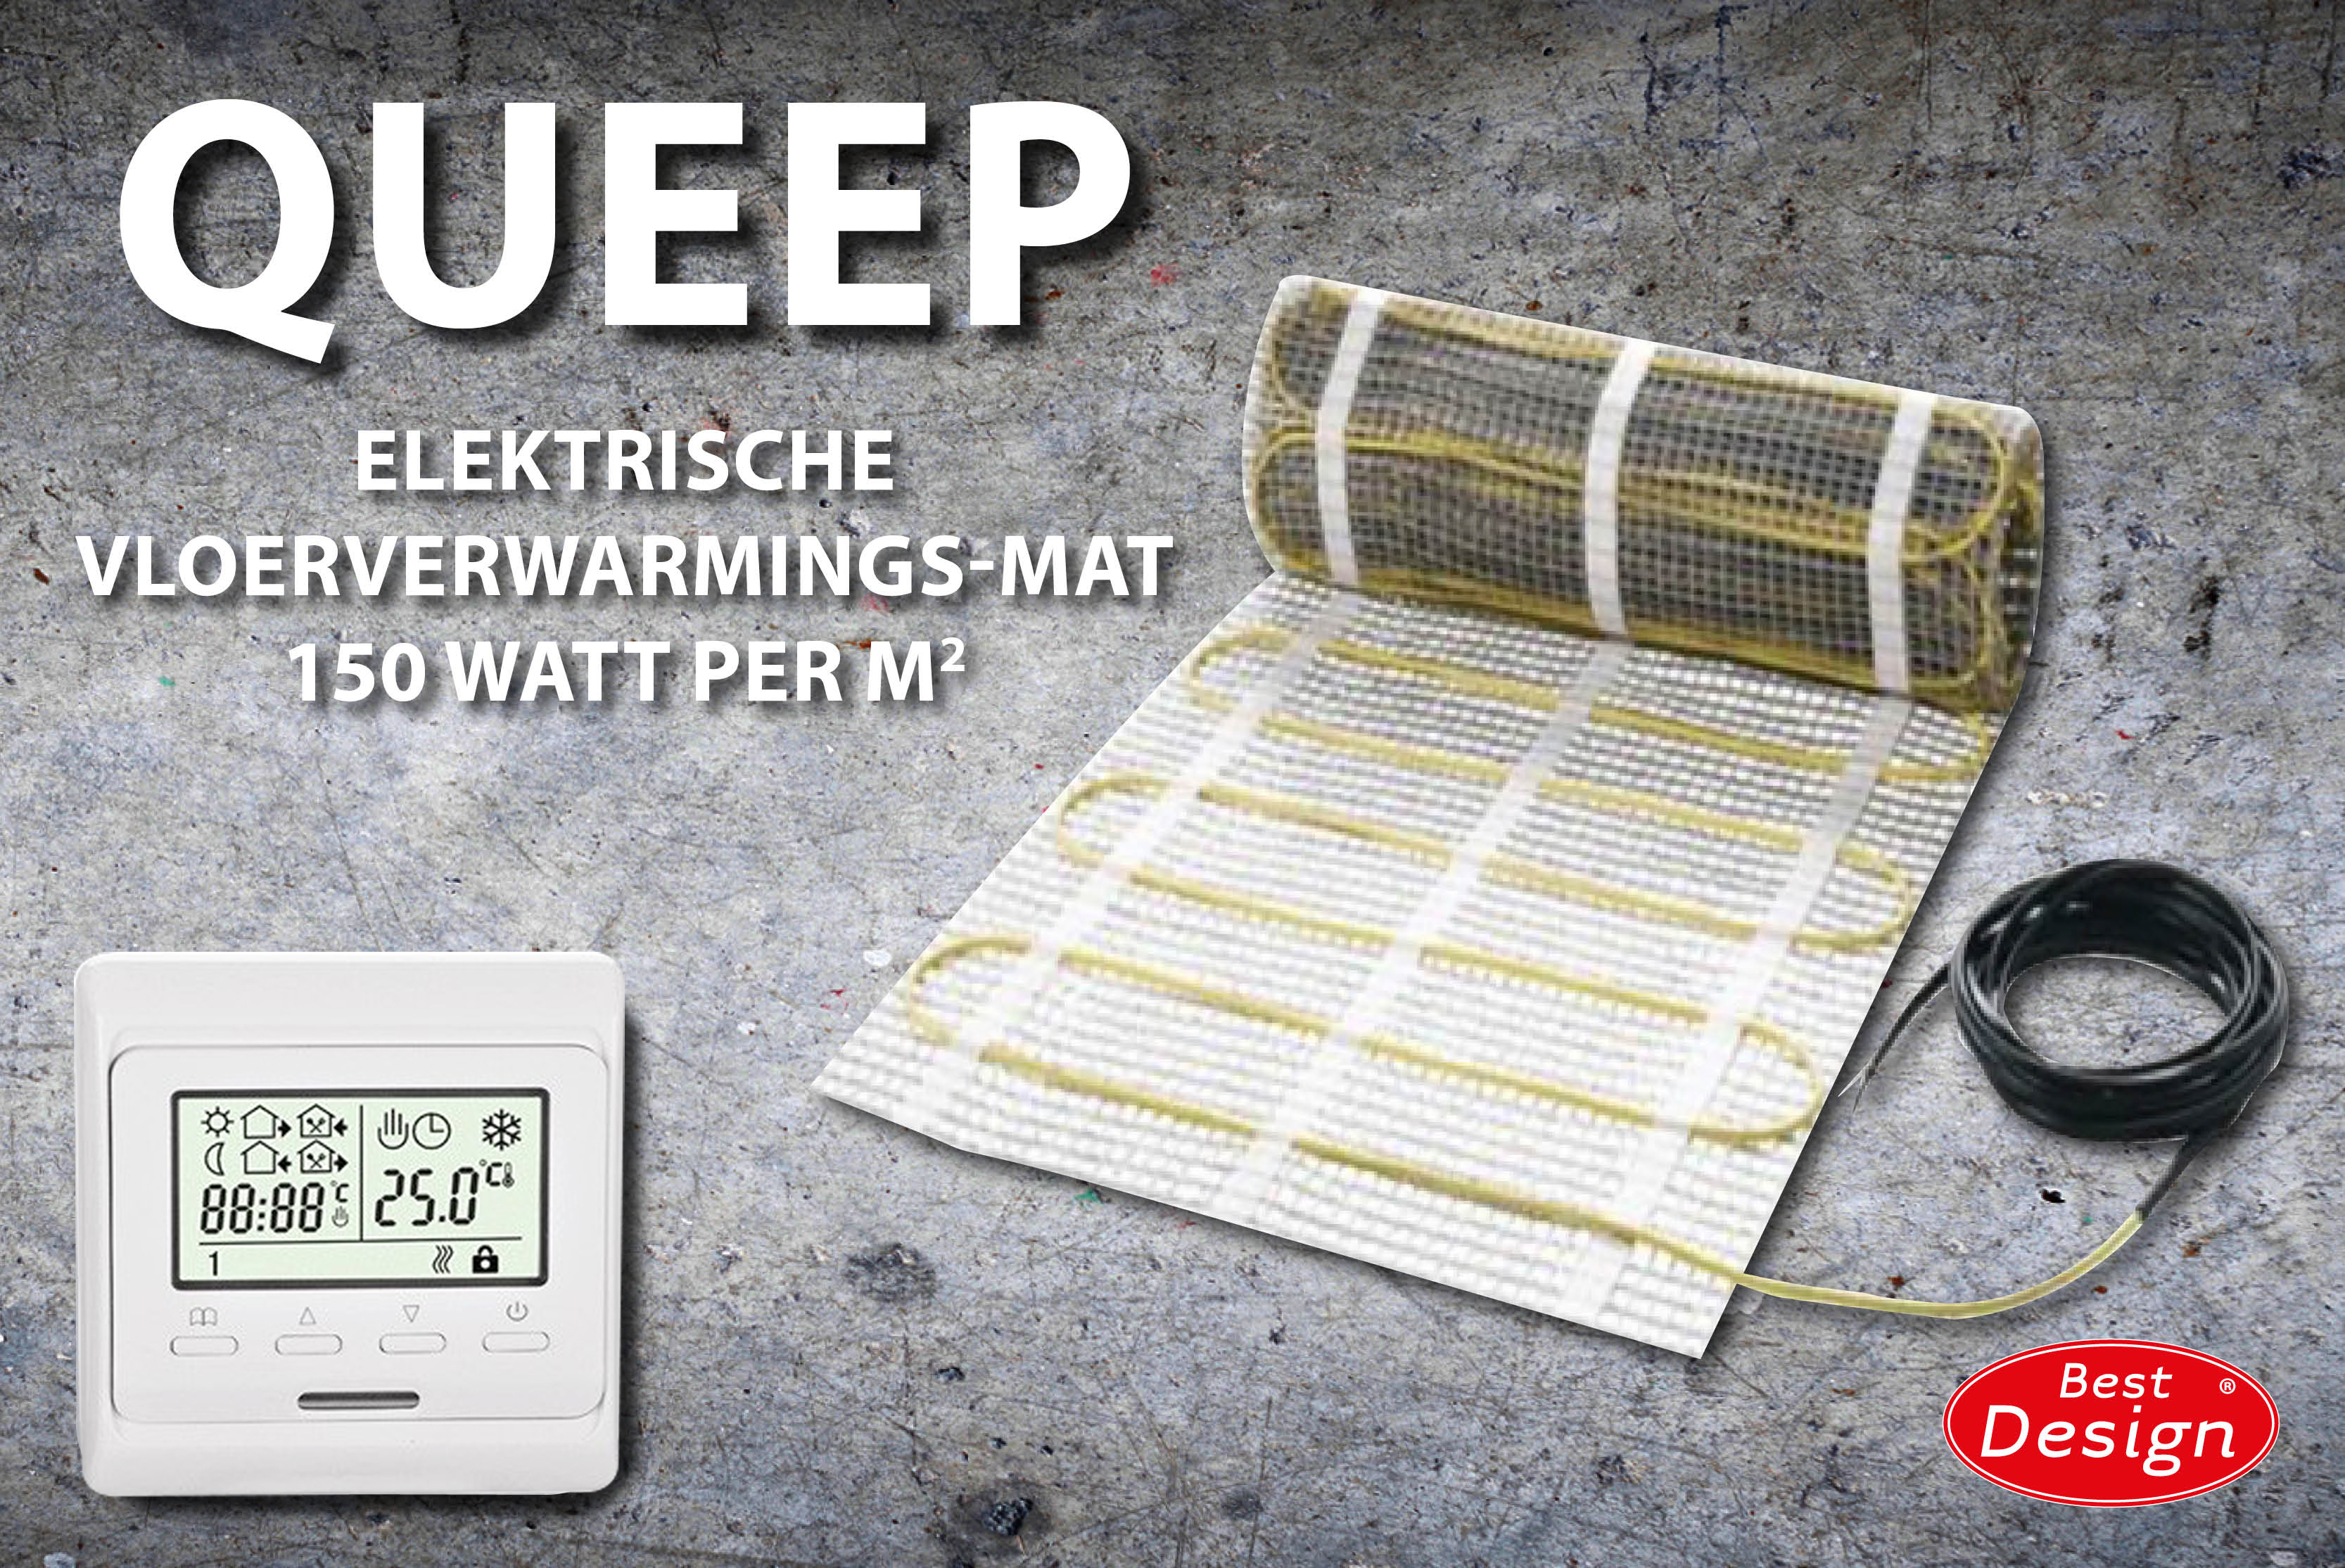 Best-Design Queep elektrische vloerverwarmings-mat 2.0 m2 Top Merken Winkel